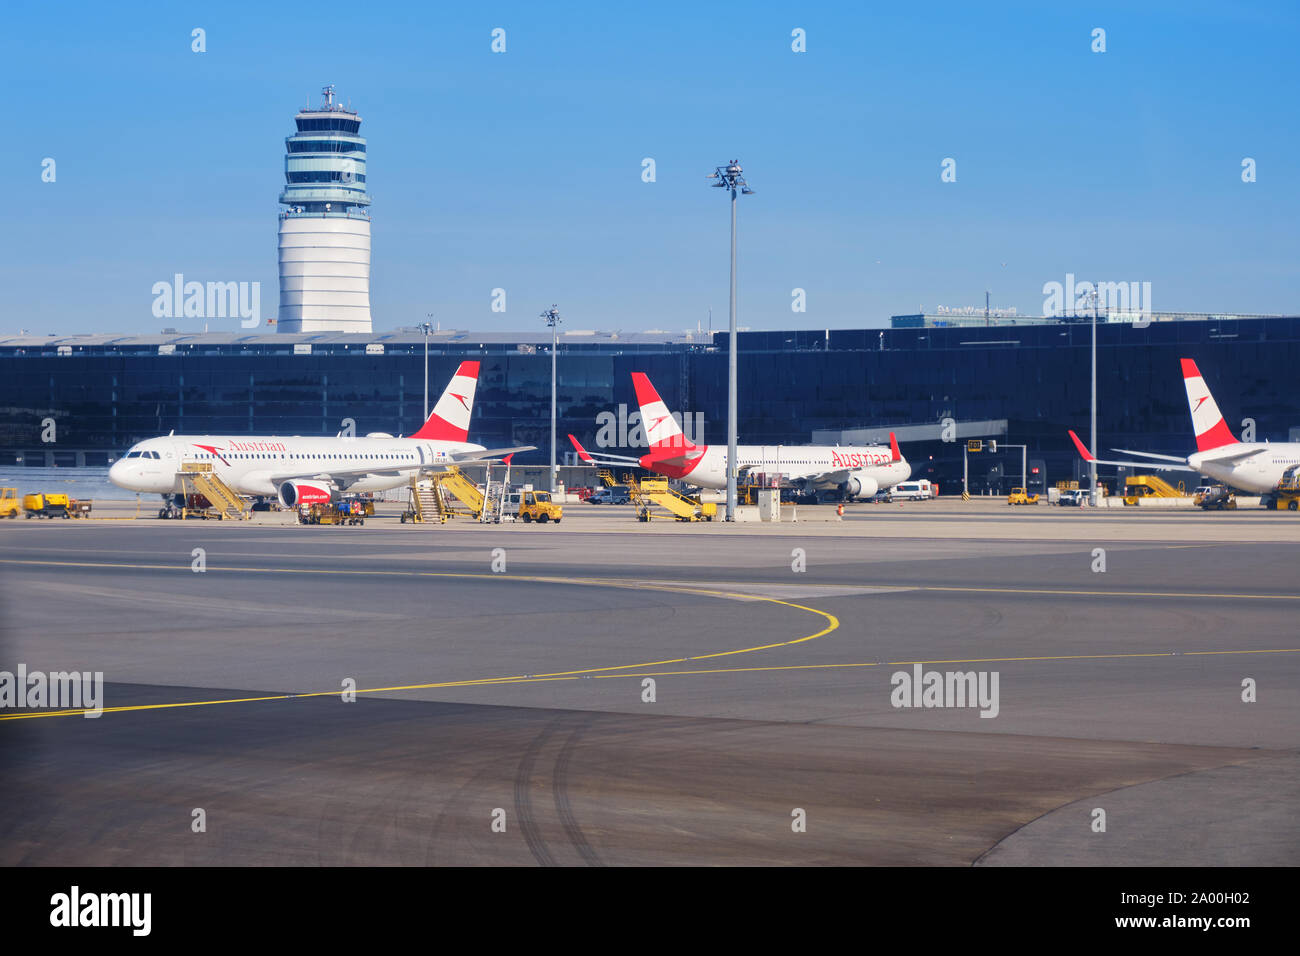 Schwechat, Österreich - 15. September 2019: Austrian Airlines Flugzeuge auf dem Boden am Flughafen Wien (VIE), mit Control Tower in der Rückseite Stockfoto